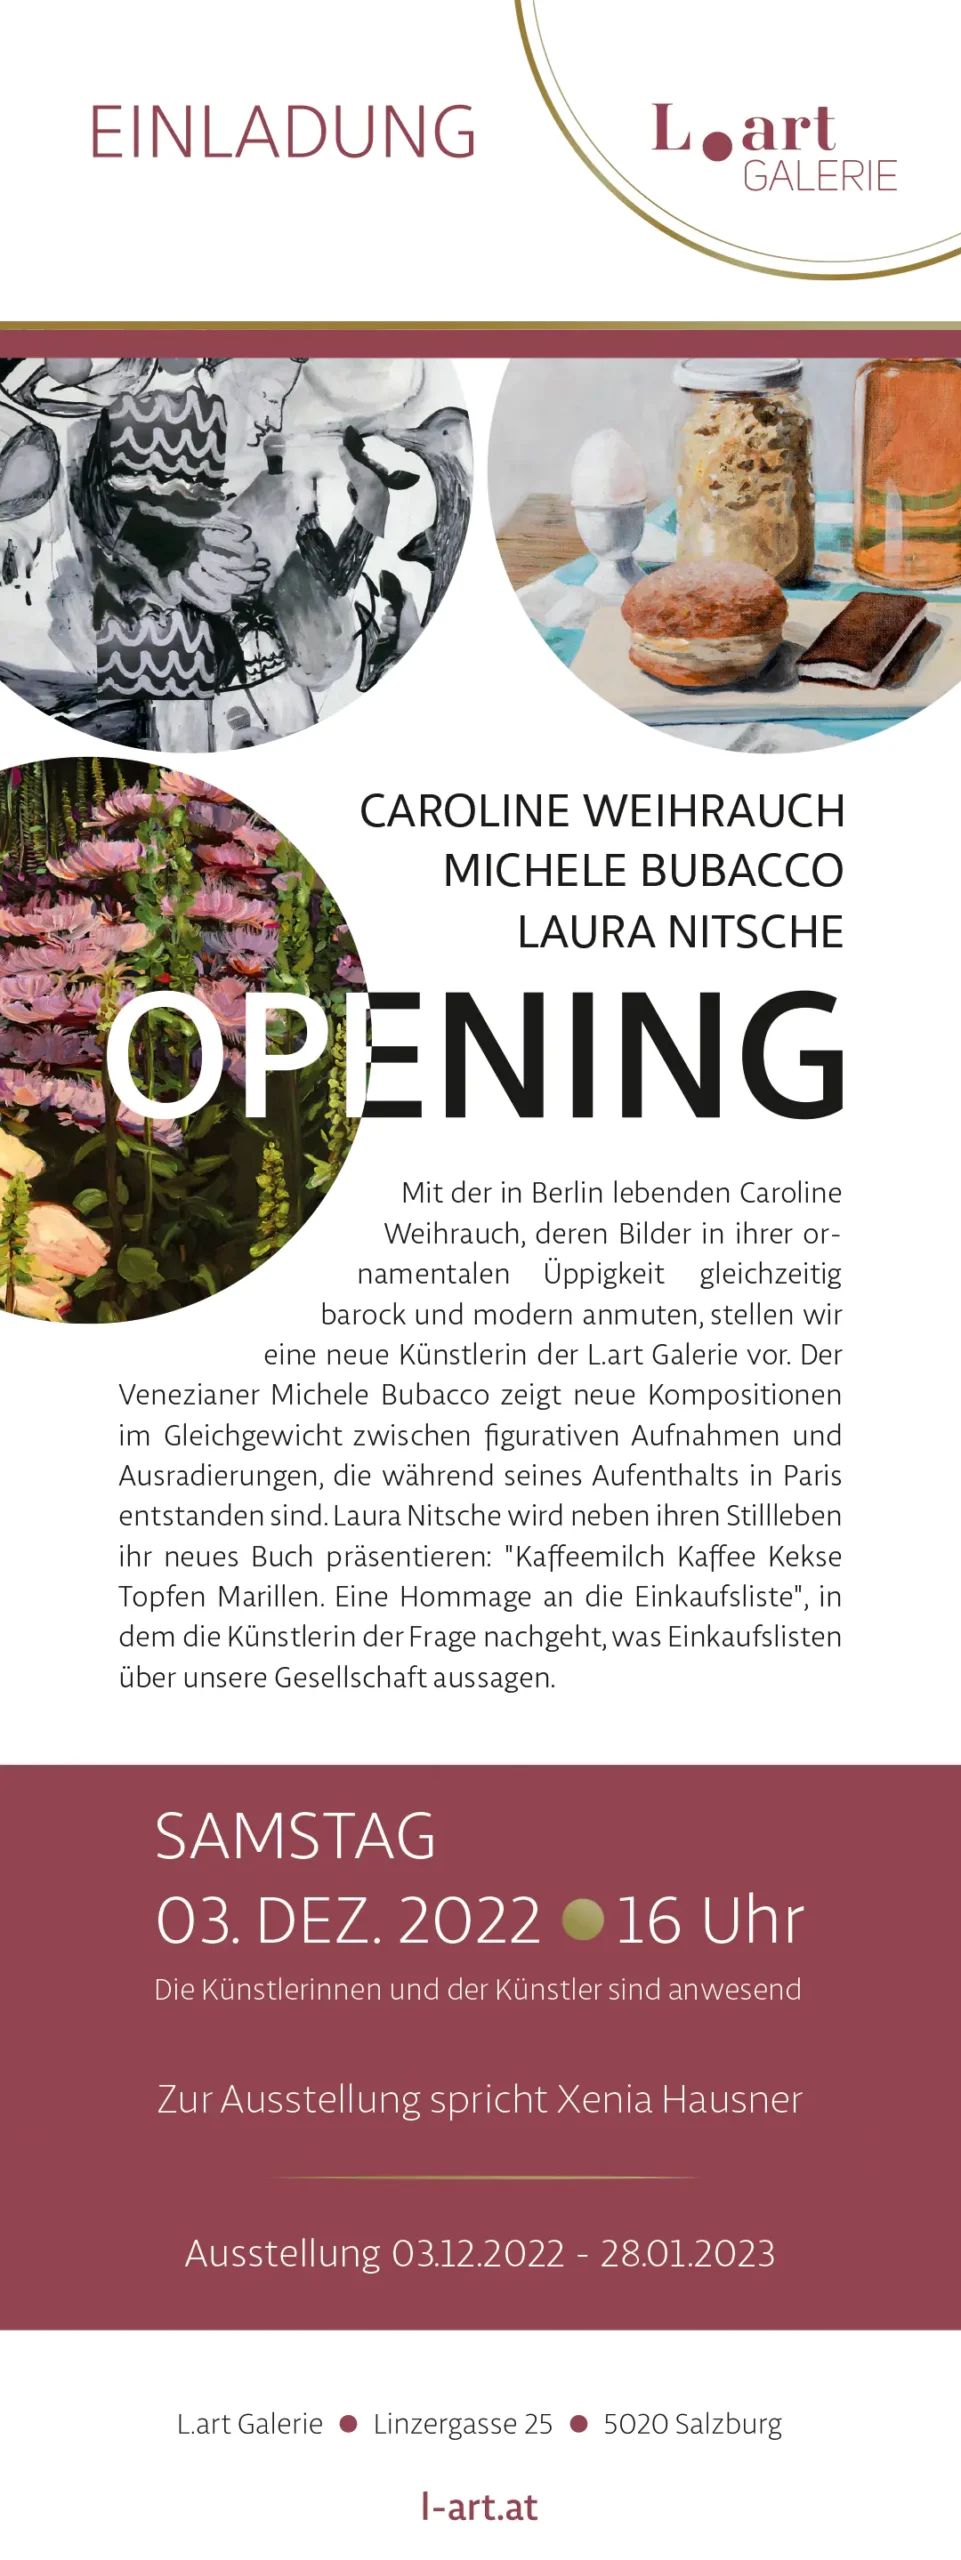 Ausstellung L.art Galerie Salzburg 03.12.2022 - 28.01.2023 1